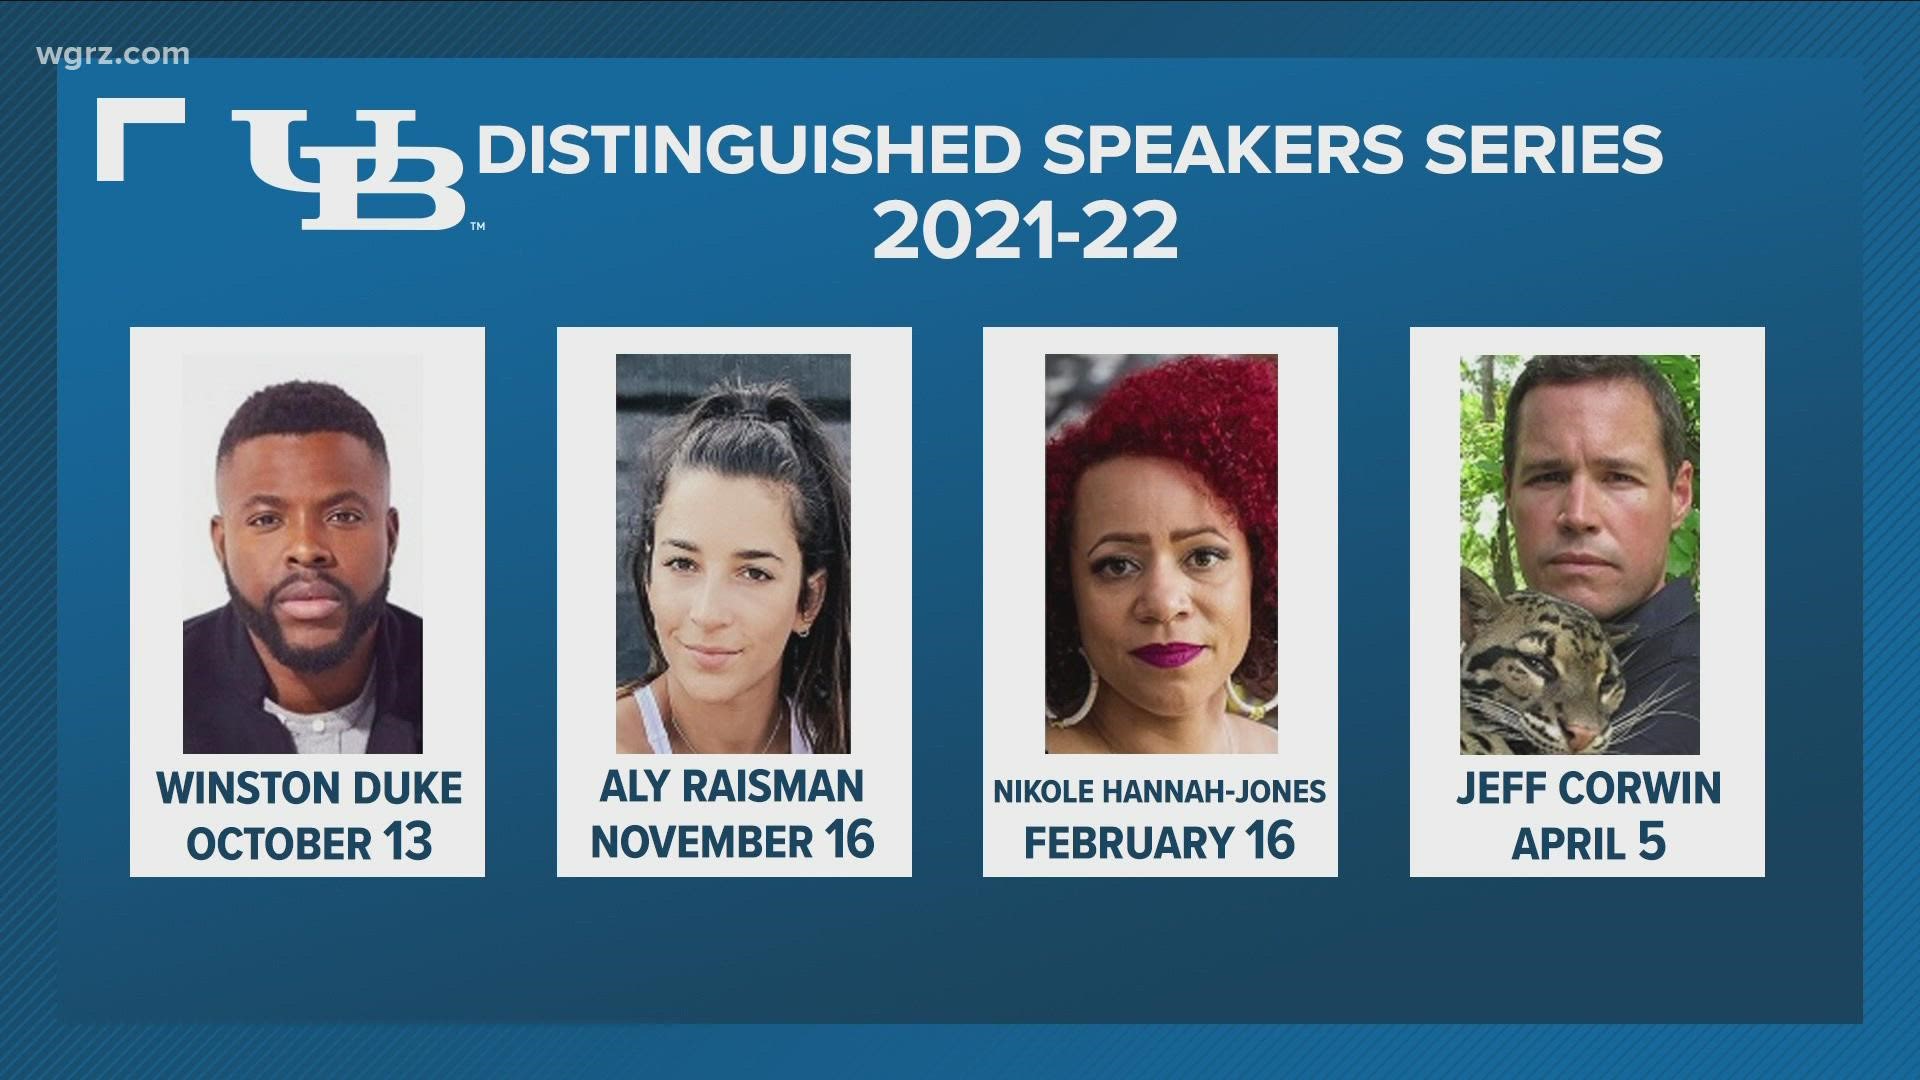 UB distinguished speakers series